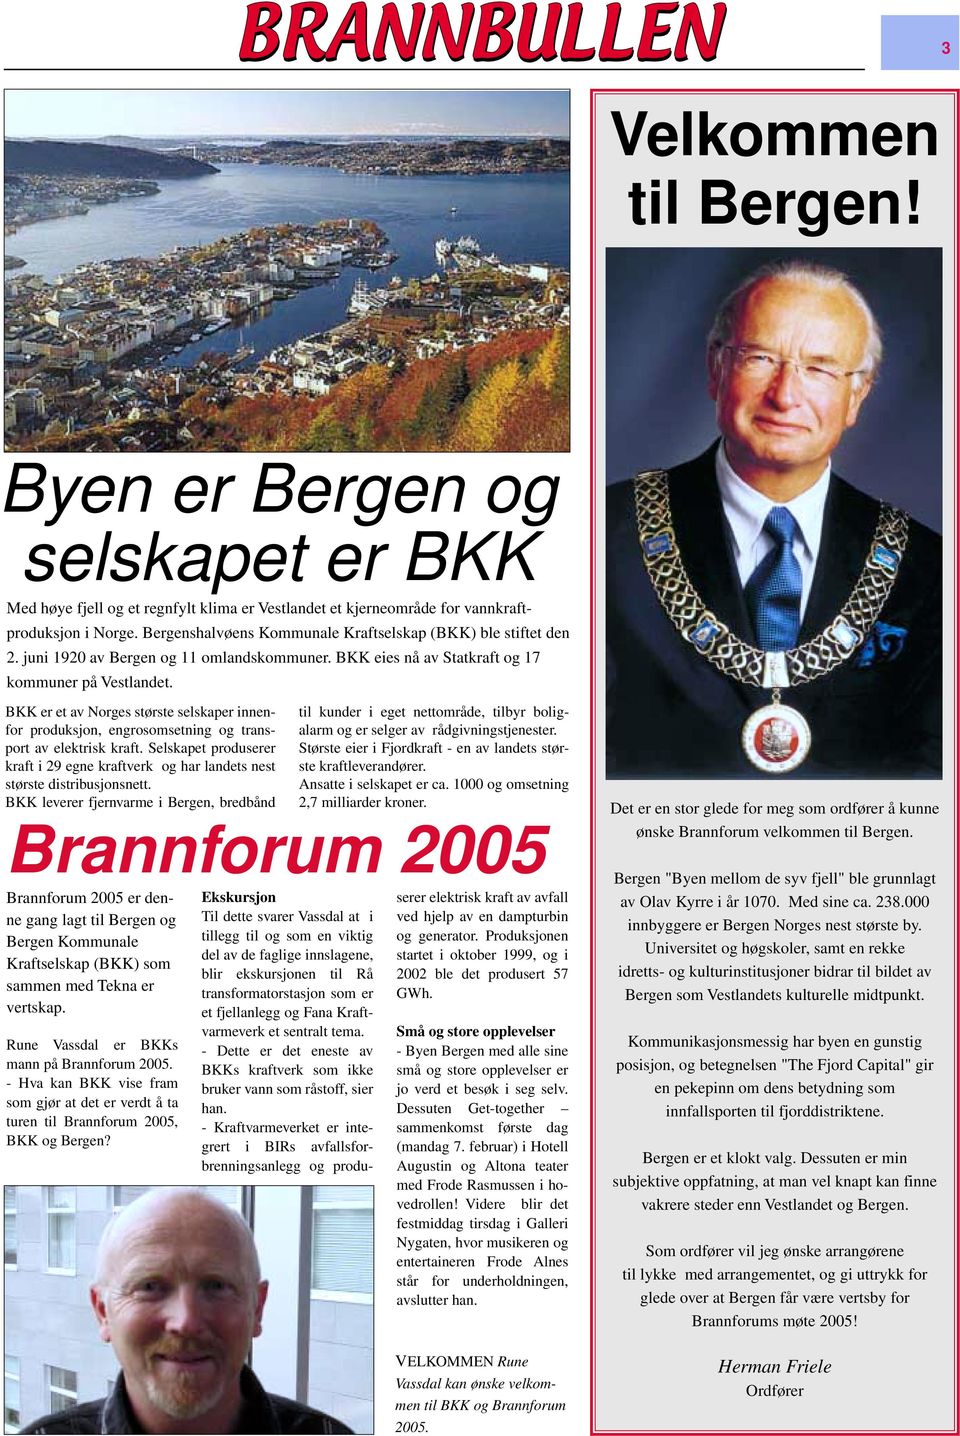 BKK er et av Norges største selskaper innenfor produksjon, engrosomsetning og transalarm og er selger av rådgivningstjenester. til kunder i eget nettområde, tilbyr boligport av elektrisk kraft.